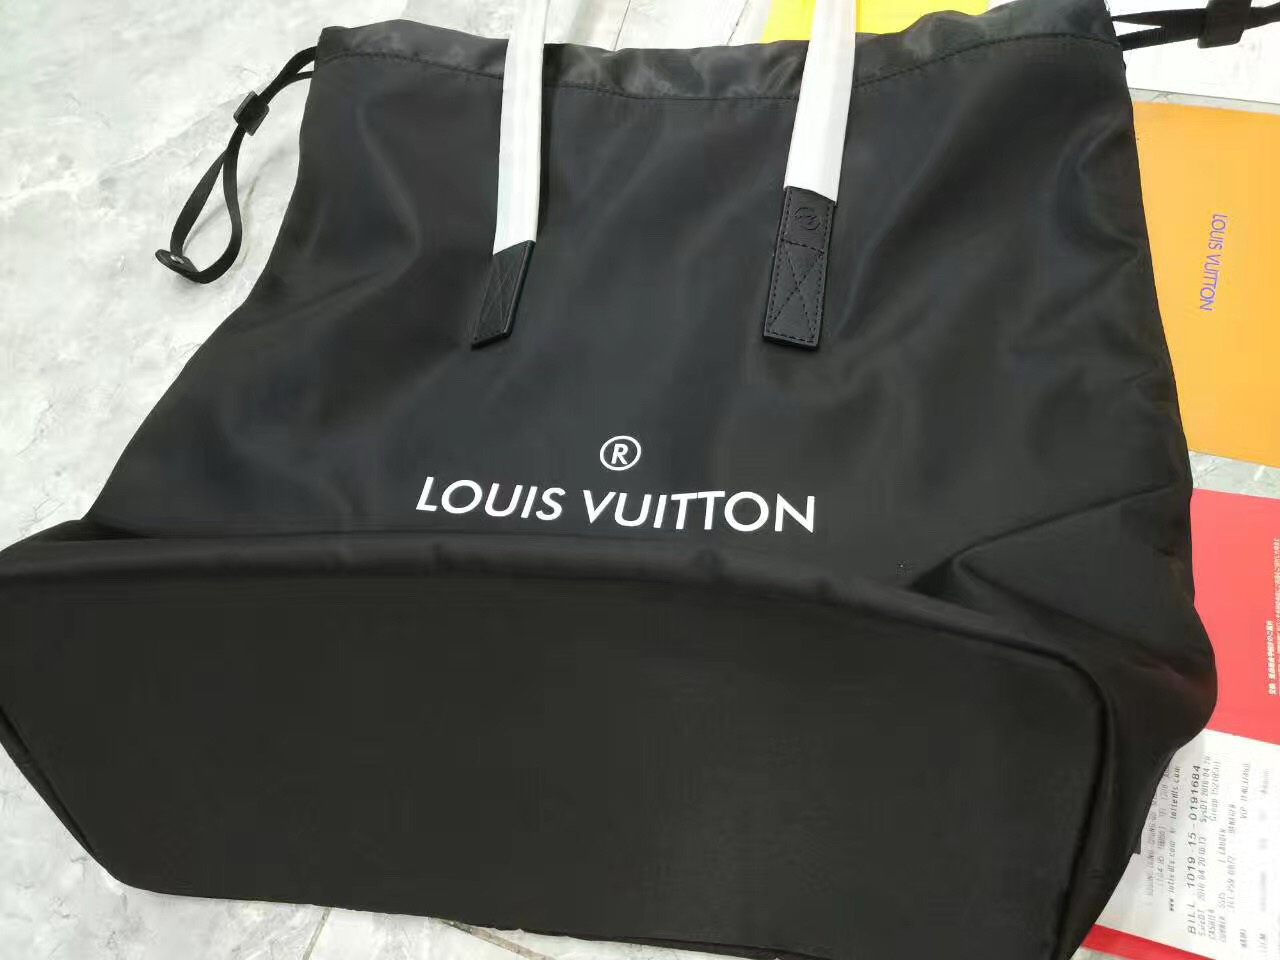 2017 LV Cabas Light bag